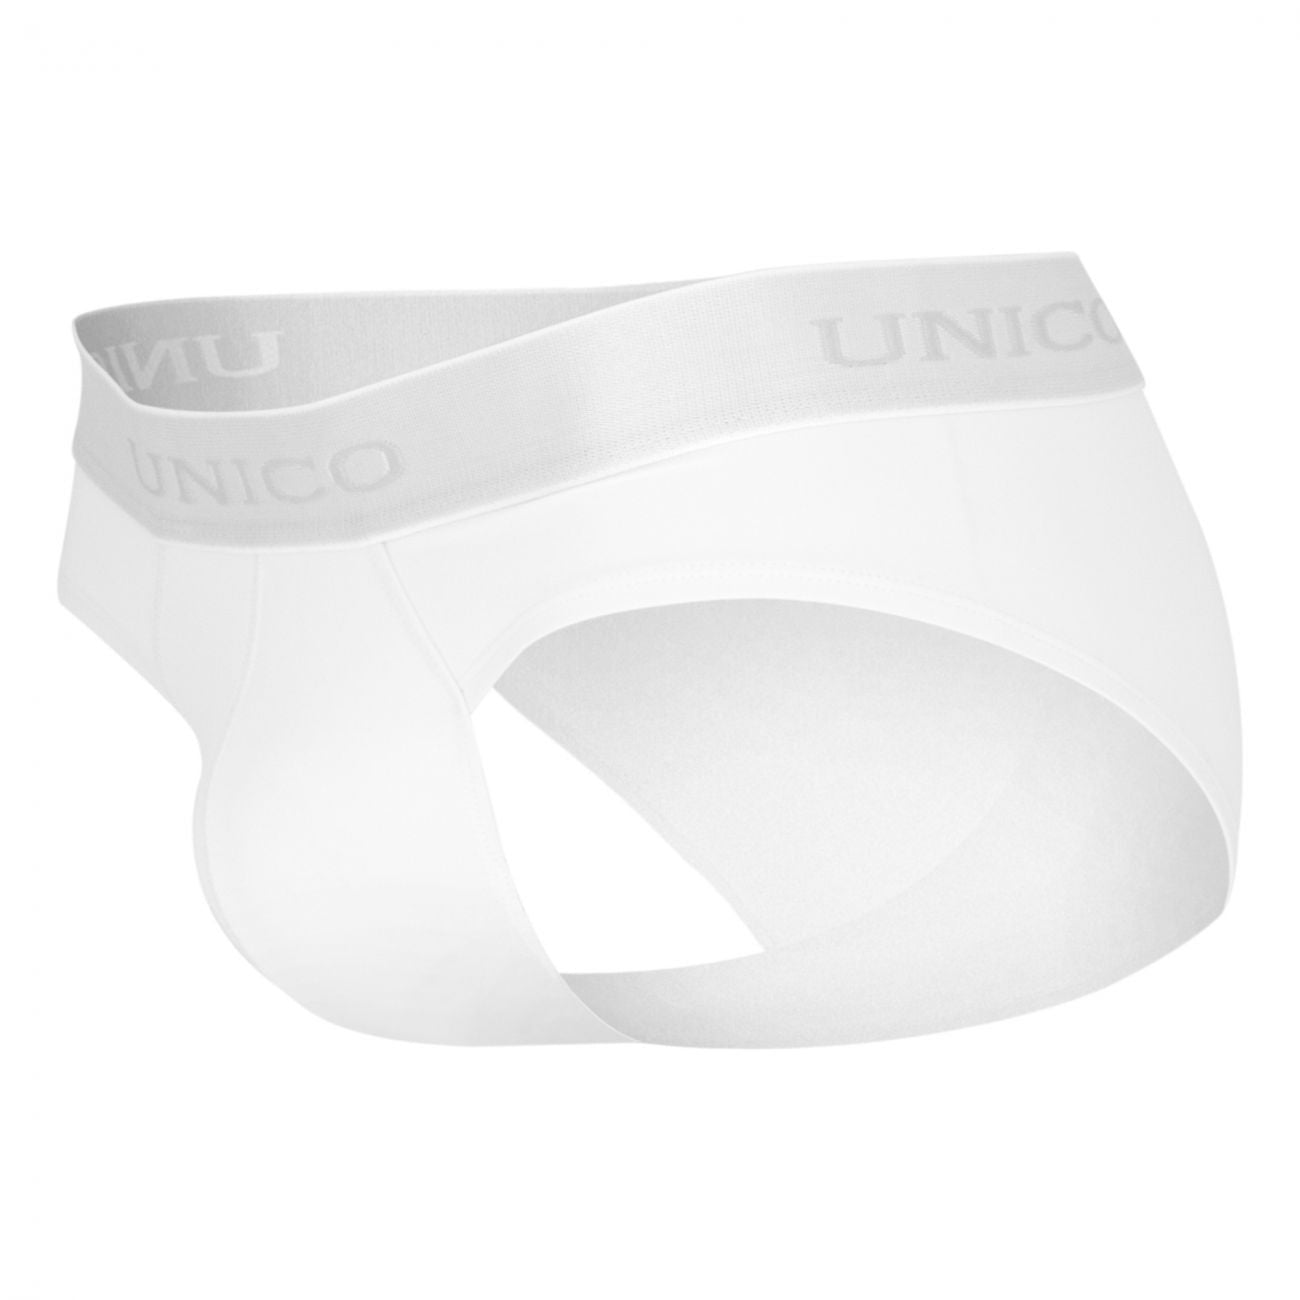 Unico 1600050300 Briefs Cristalino White